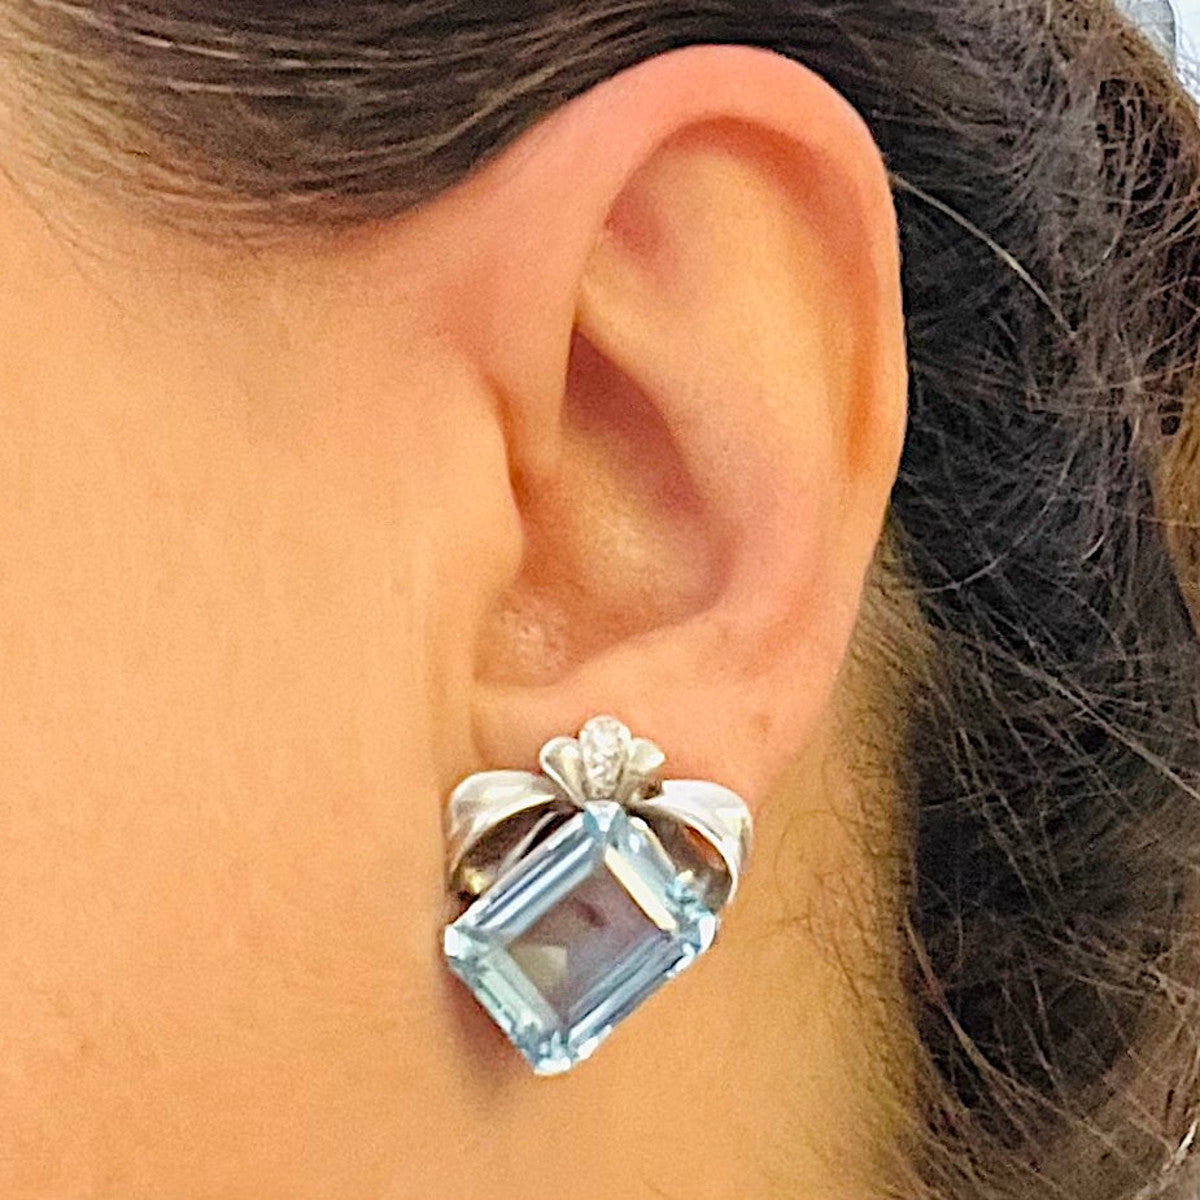 1950s 18KT White Gold Aquamarine & Diamond Earrings on ear